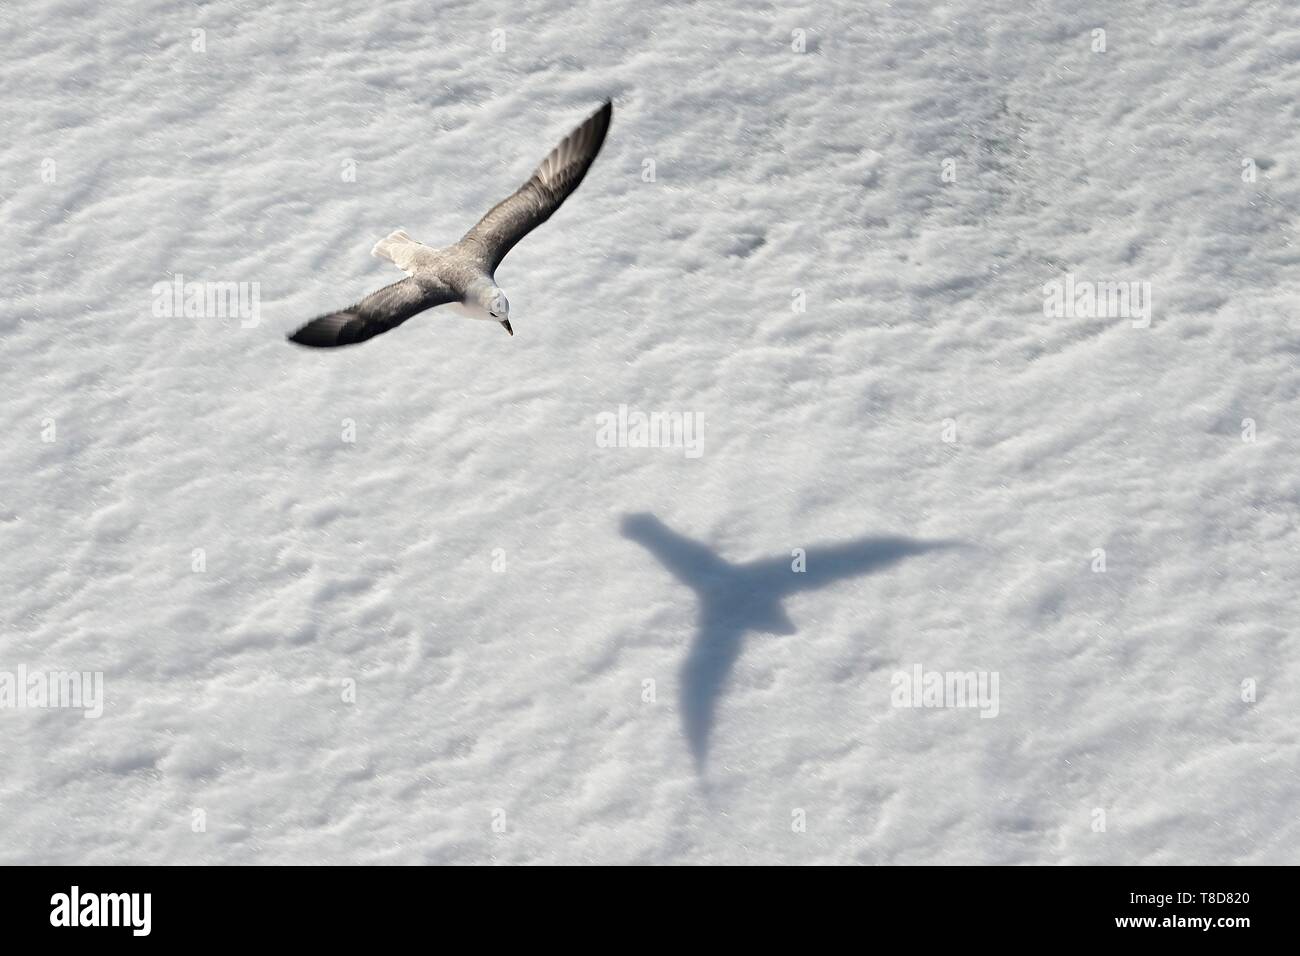 Le Groenland, côte nord-ouest, le détroit de Smith, le Fulmar boréal (Fulmarus glacialis) voler au-dessus de la banquise Banque D'Images